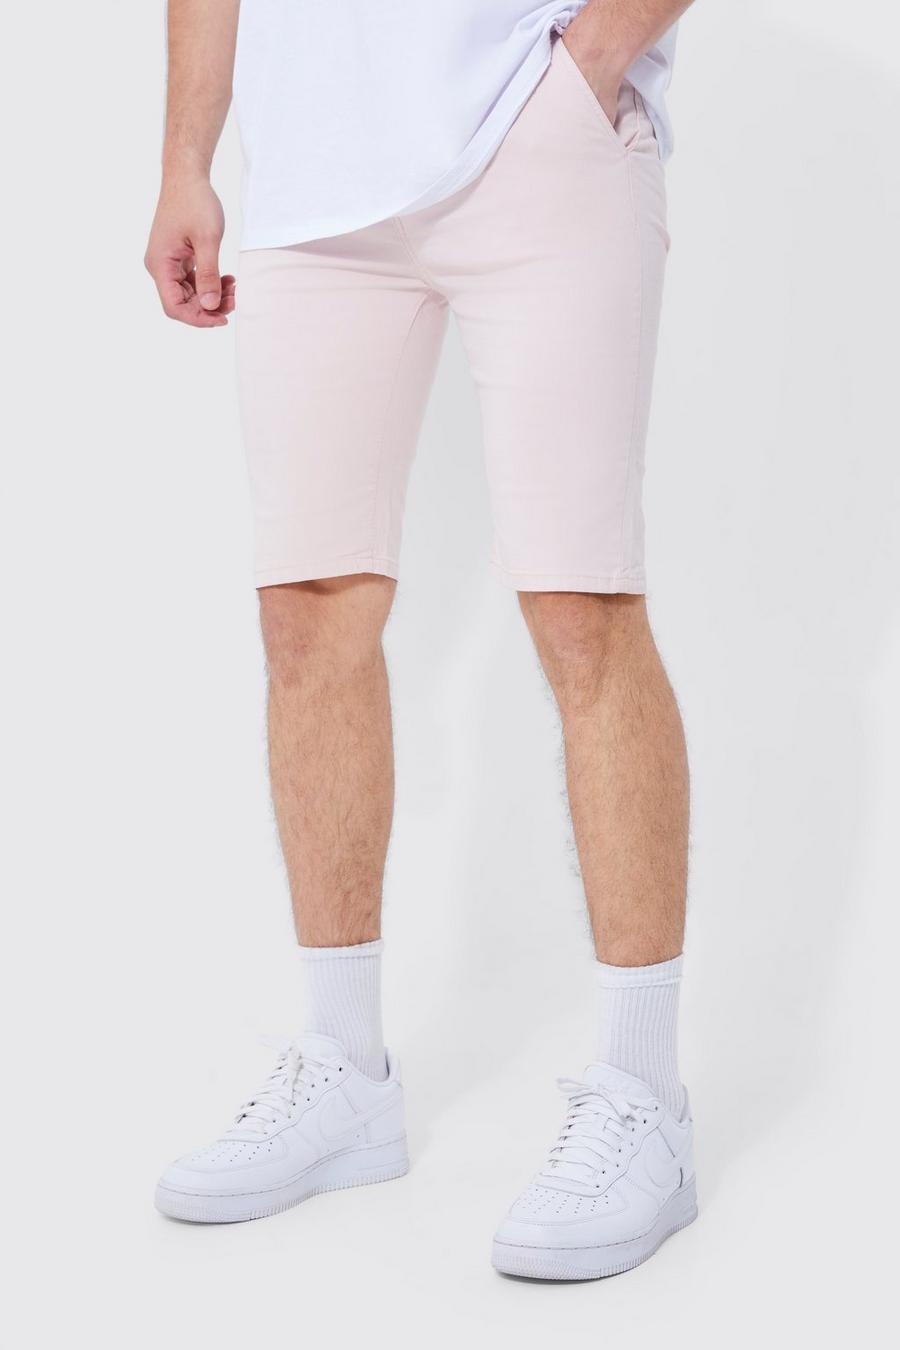 Pantalón corto Tall chino pitillo elástico con cintura fija, Light pink rosa